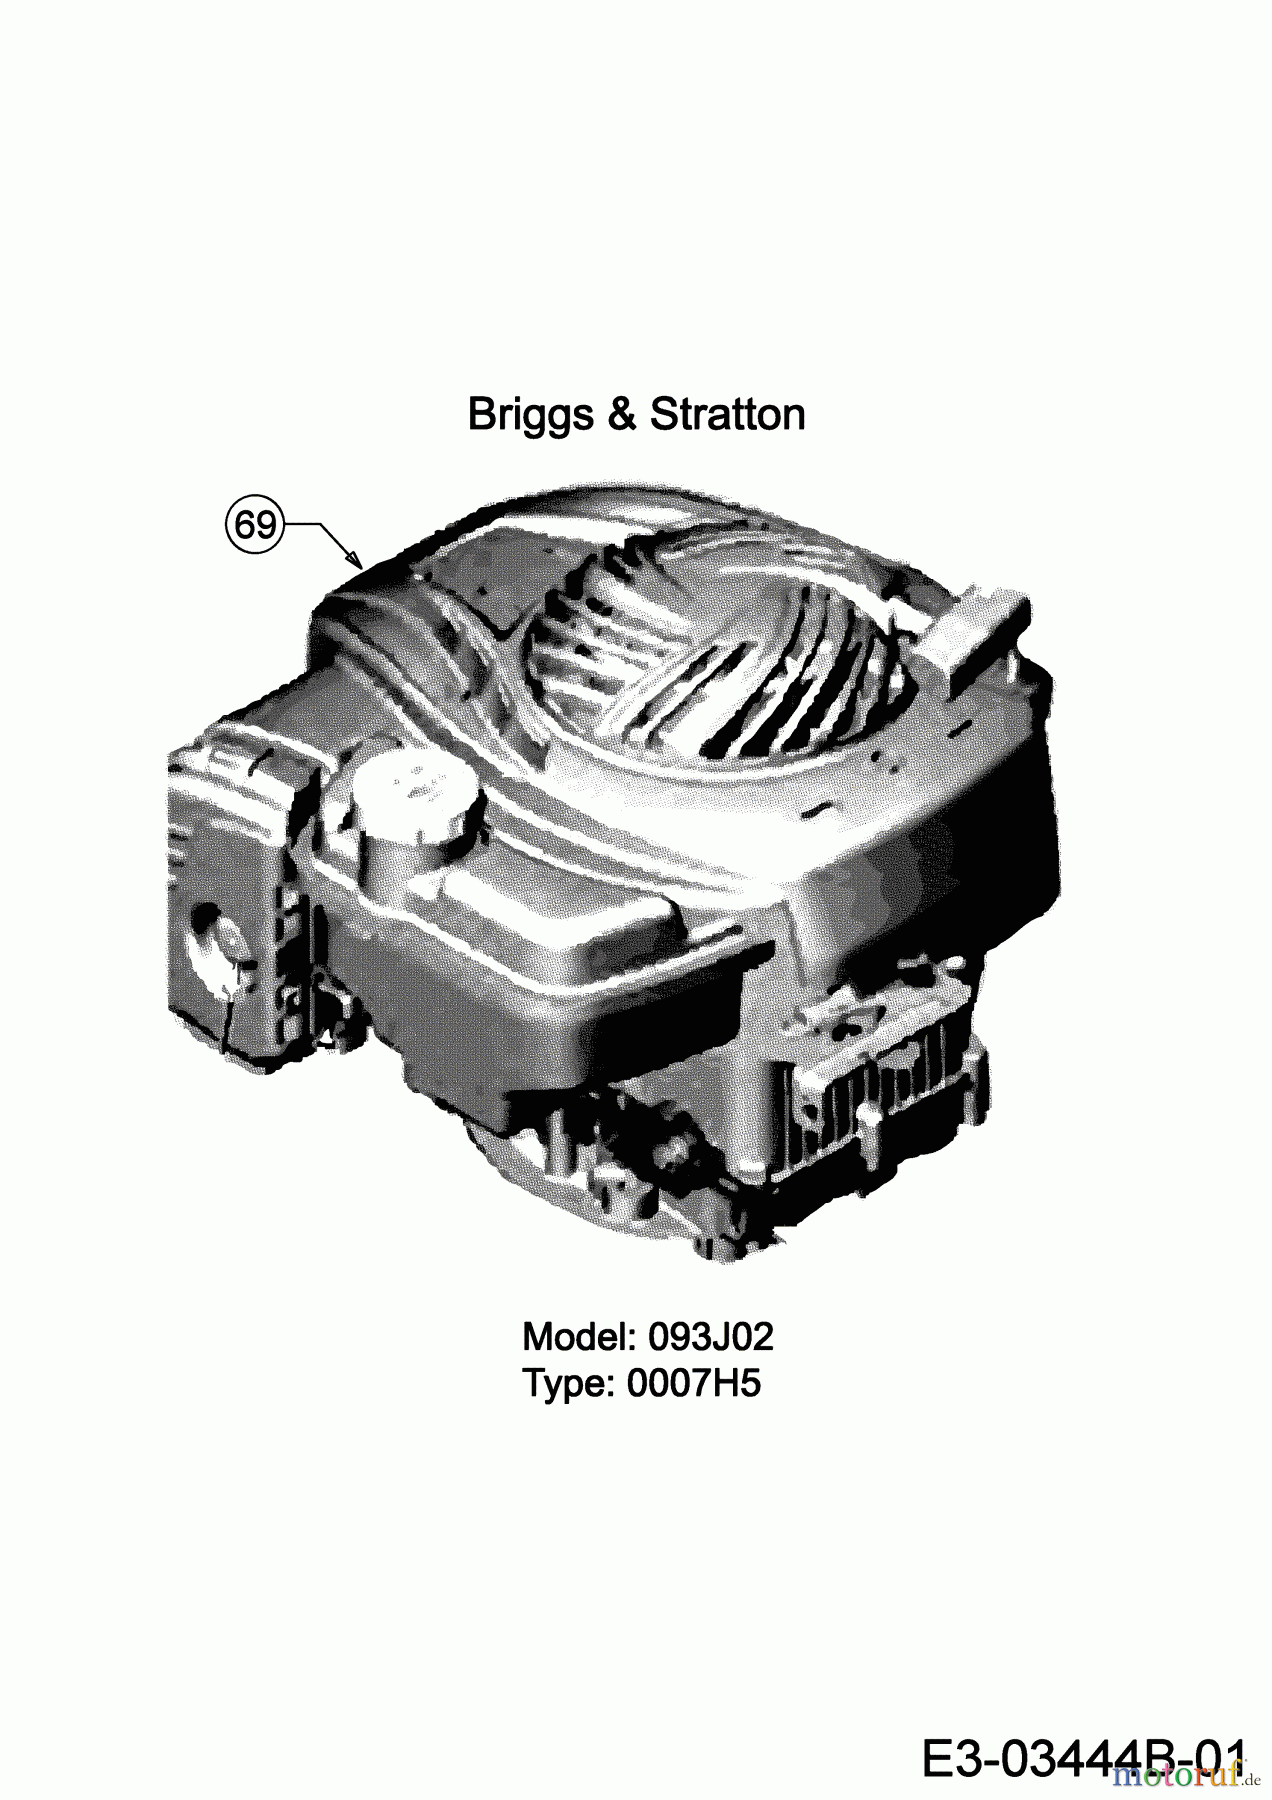  MTD Motormäher mit Antrieb 53 SPSBHW 12D-PH5L600 (2020) Motor Briggs & Stratton